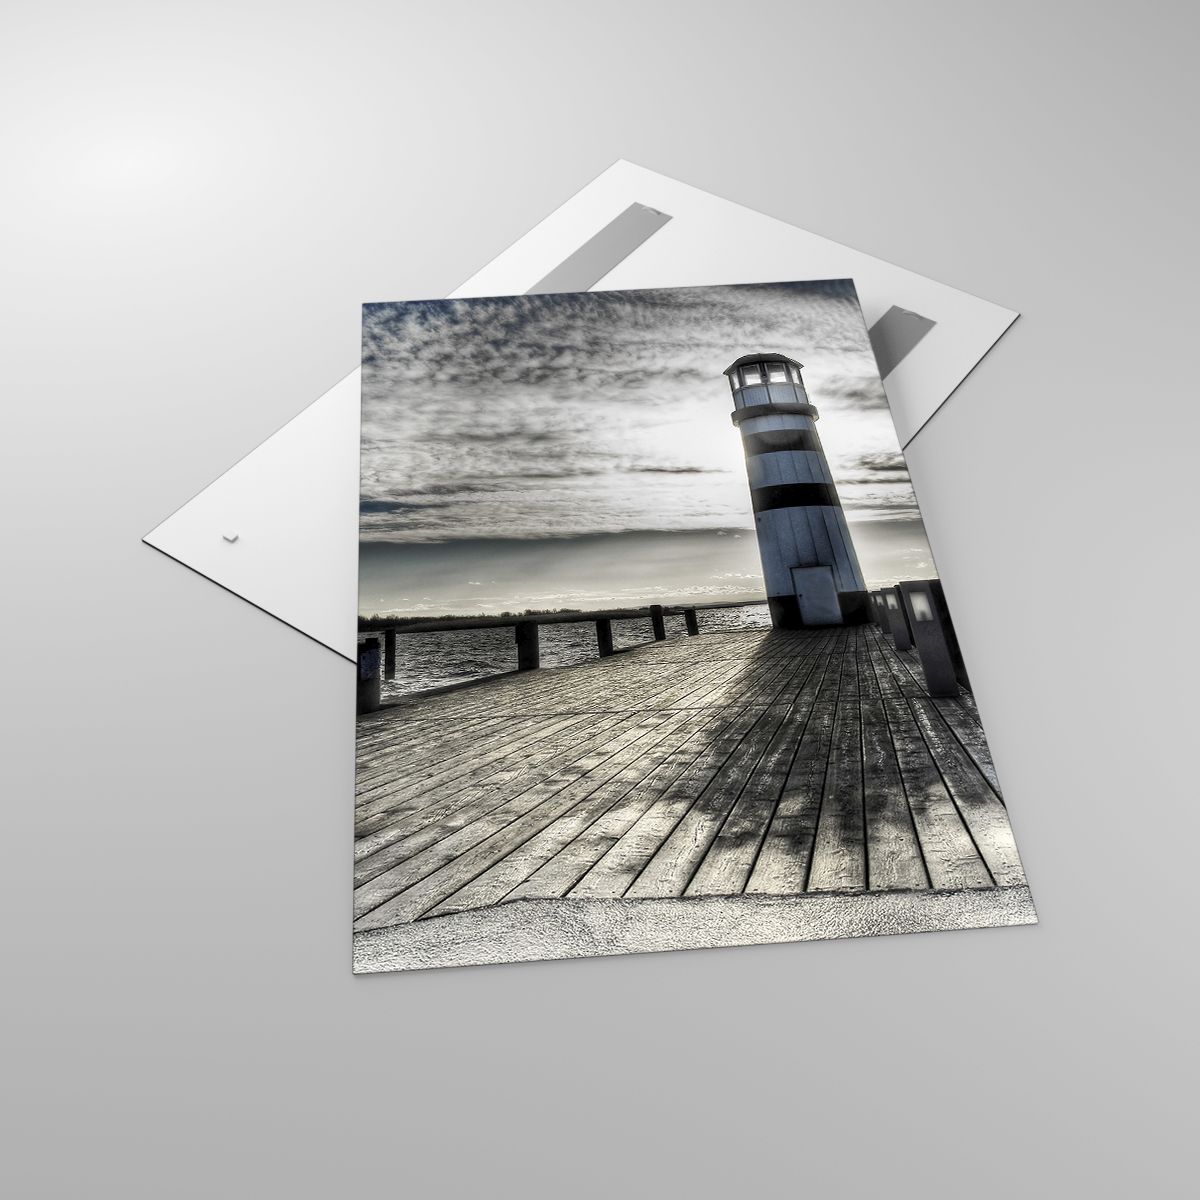 Glasbild Leuchtturm, Glasbild Landschaft, Glasbild Meer, Glasbild Reisen, Glasbild Brücke